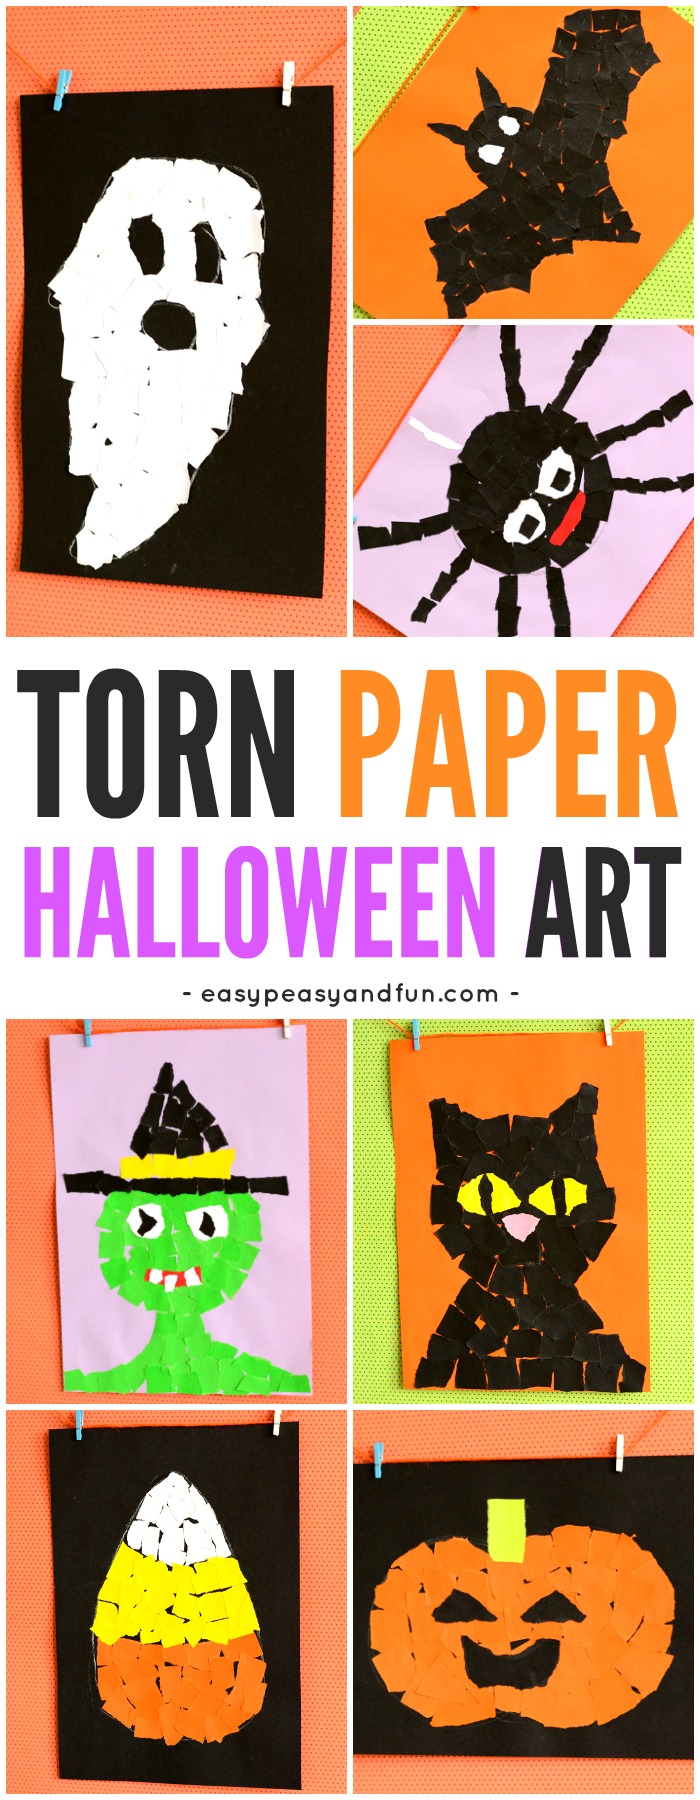 Halloween Torn Paper Art Ideas – Mosaic Collage Art